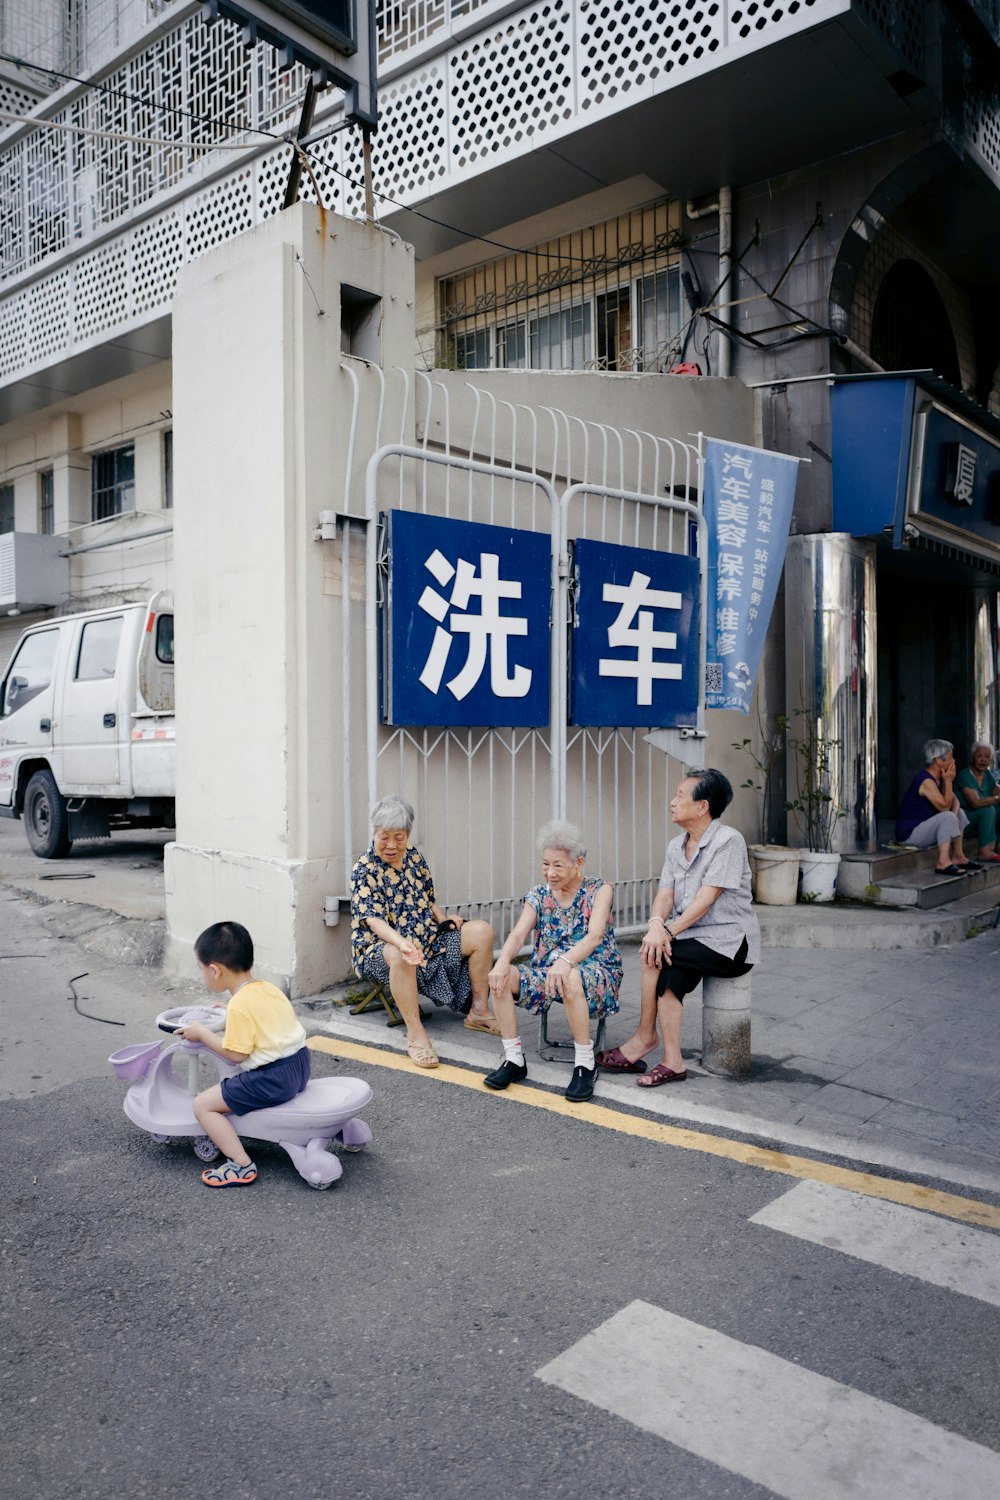 people sitting on sidewalk during daytime